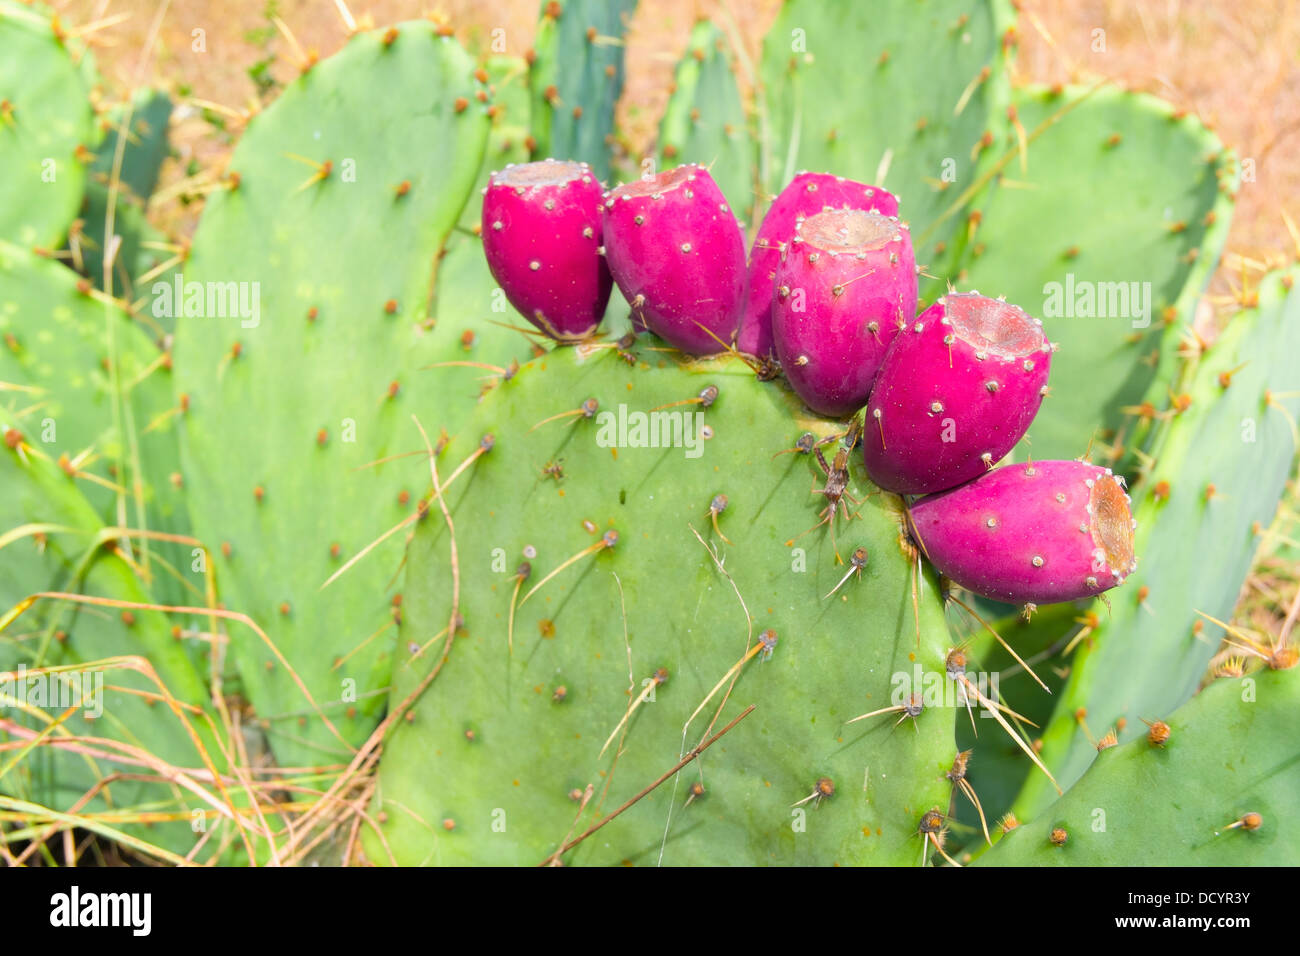 Plusieurs cactus rouge fruits sur une raquette d'Opuntia, également connu sous le nom de Cactus nopales des fruits sont également appelés figues Banque D'Images